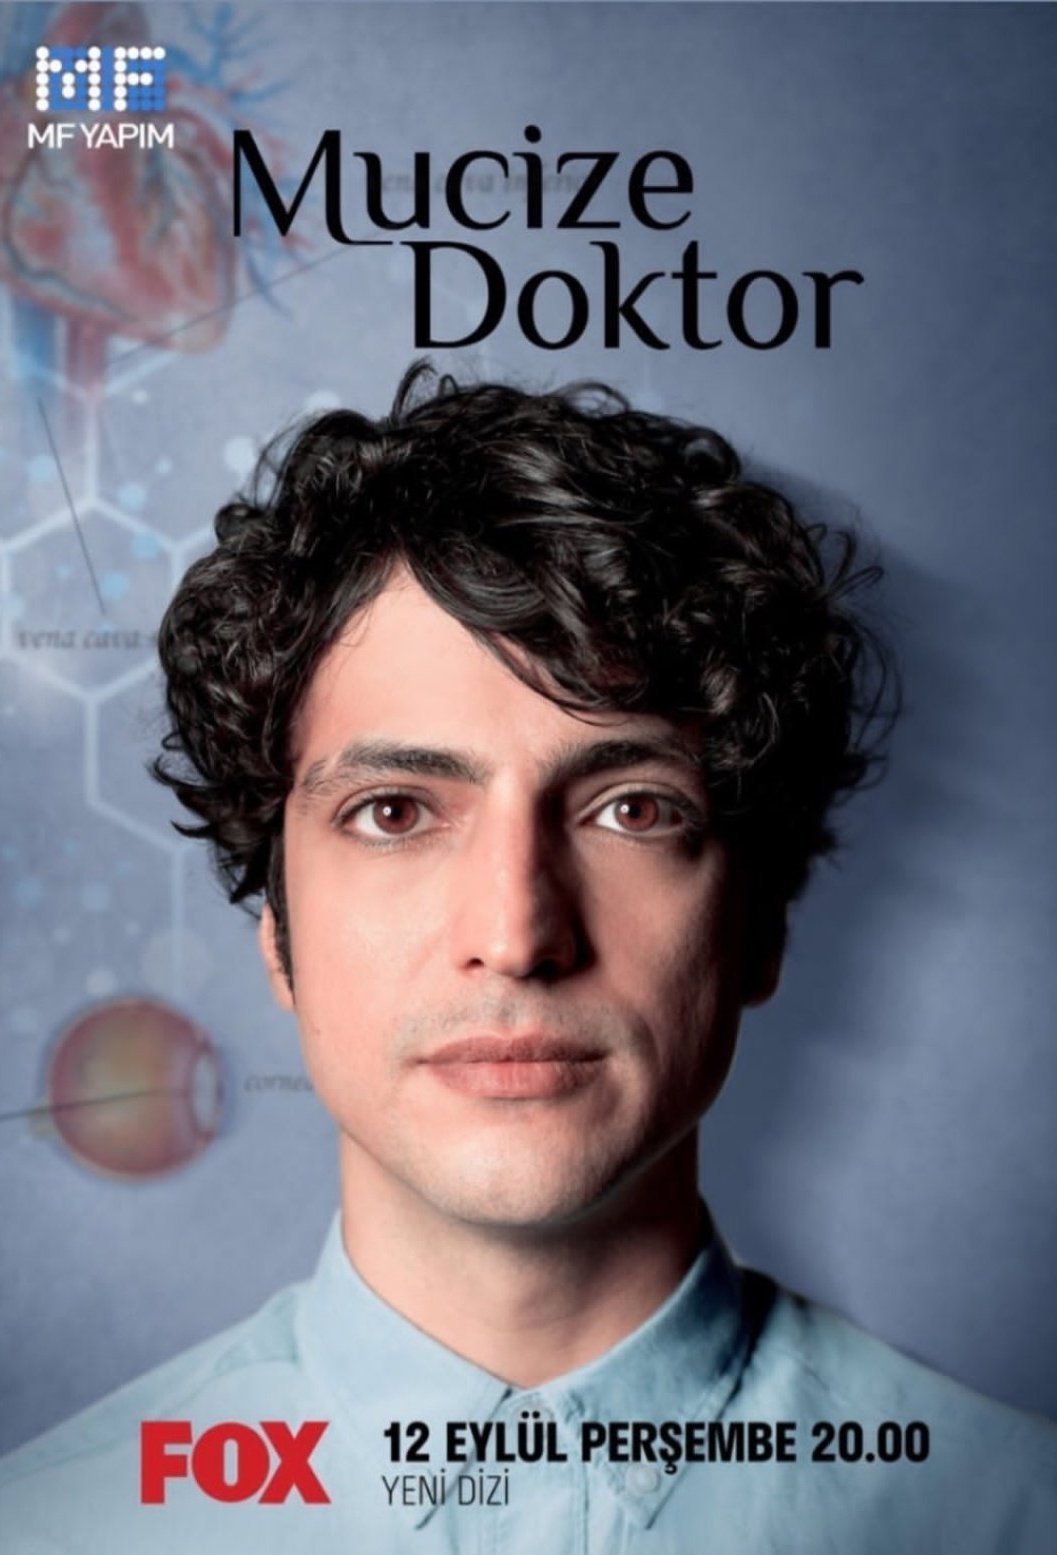 საოცარი ექიმი / Mucize Doktor (Saocari Eqimi Qartulad) ქართულად